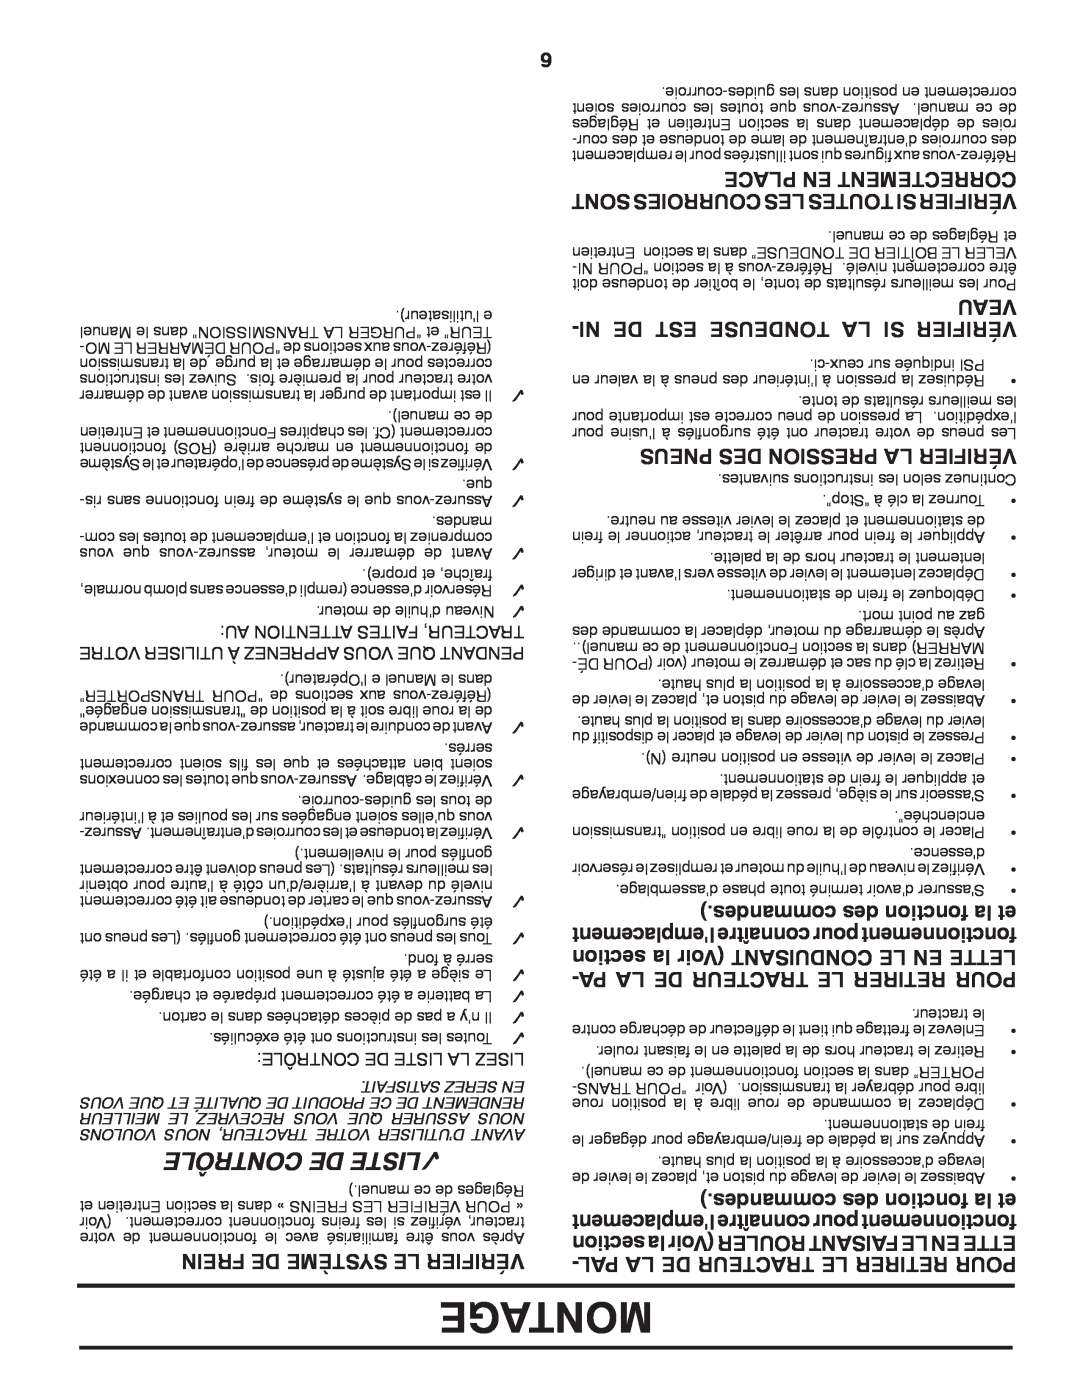 Poulan PB195H46YTX manual Montage, Contrôle De Liste, Ni De Est Tondeuse La Si Vérifier, desmancom des tionfonc la et, Veau 